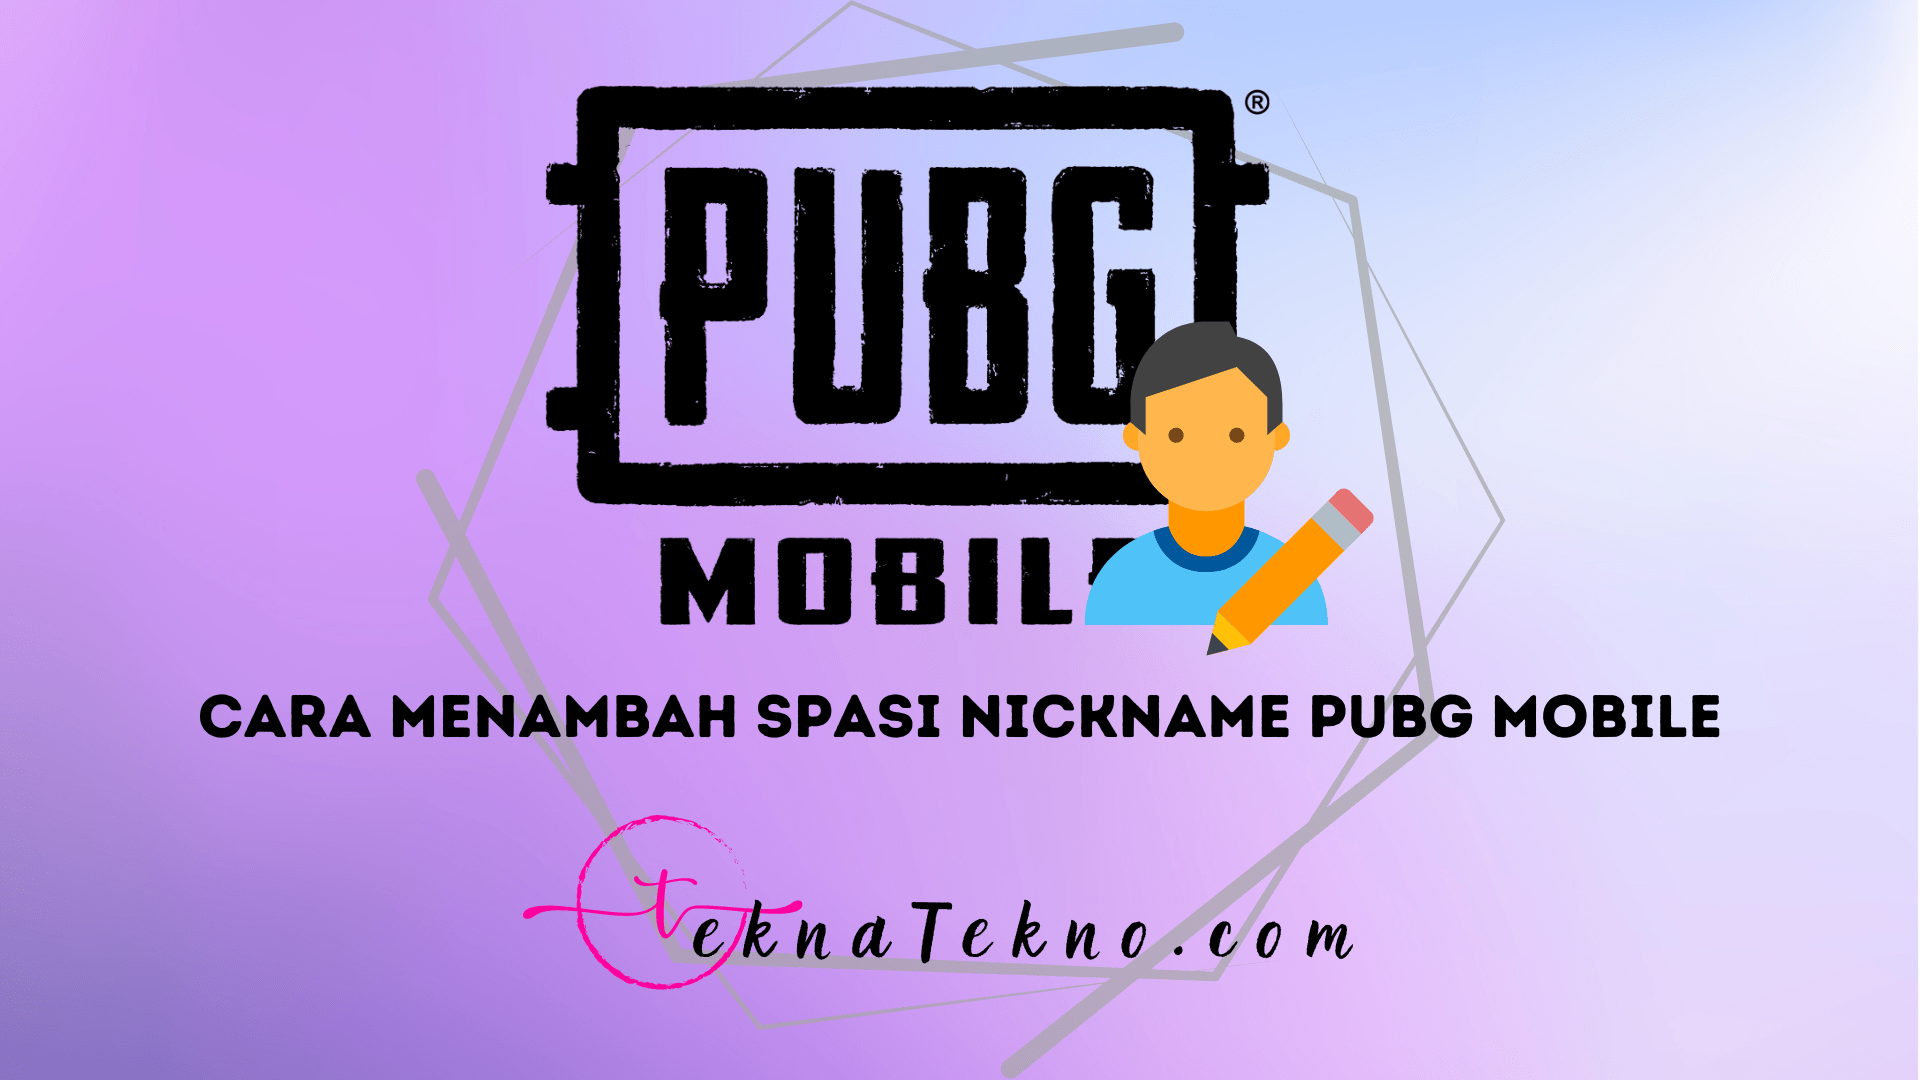 6 Cara Menambahkan Spasi Pada Nickname PUBG Mobile dengan Mudah